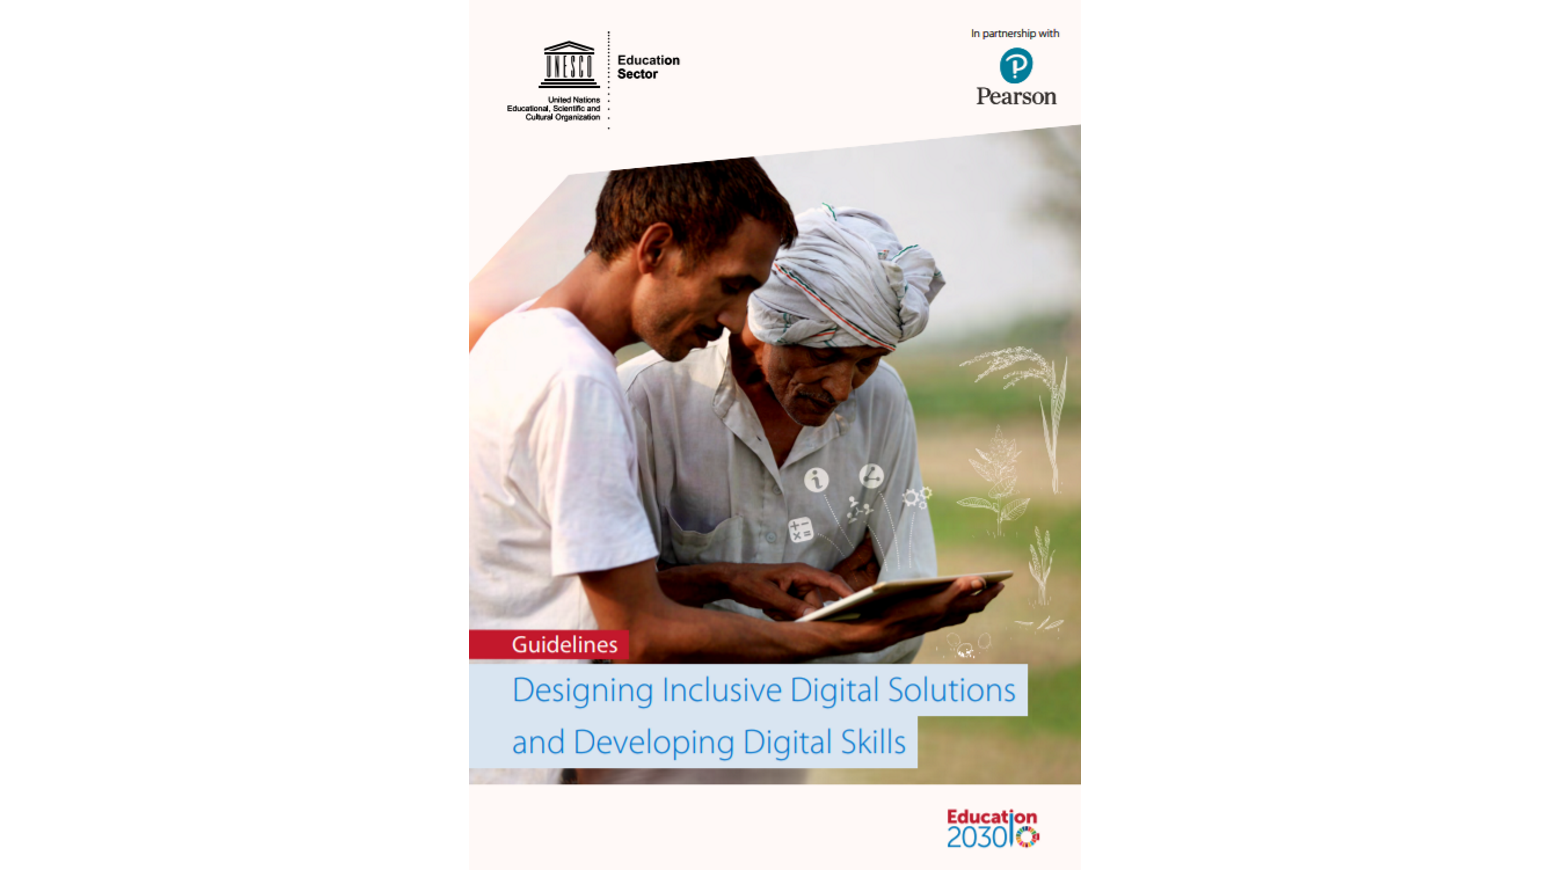 UNESCO divulga Linhas orientadoras para Serviços Digitais Inclusivos